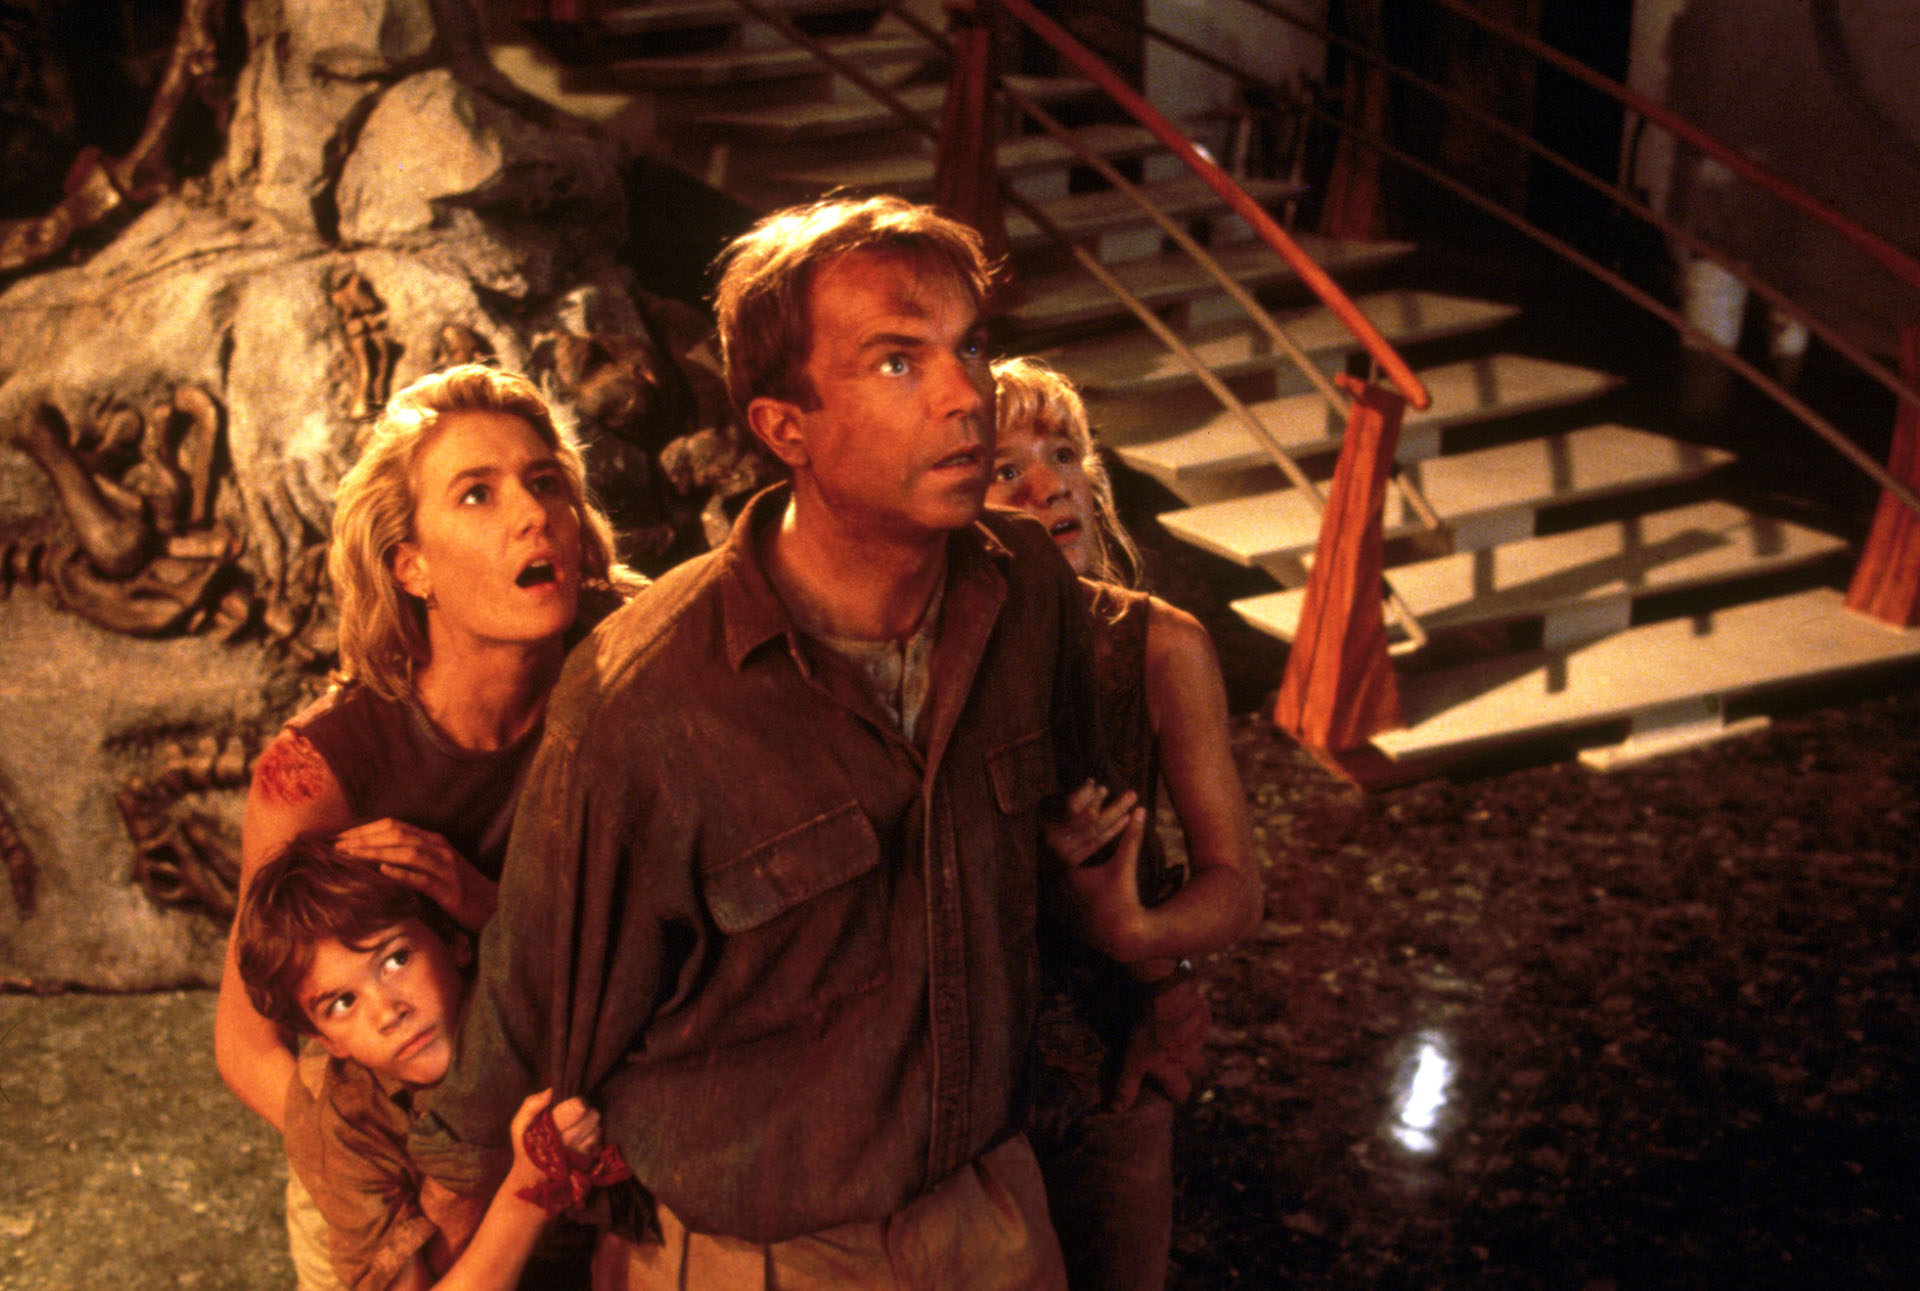 El actor Sam Neill, recordado por su papel en “Jurassic Park”, reveló que padece cáncer en la sangre. (SHUTTERSTOCK)